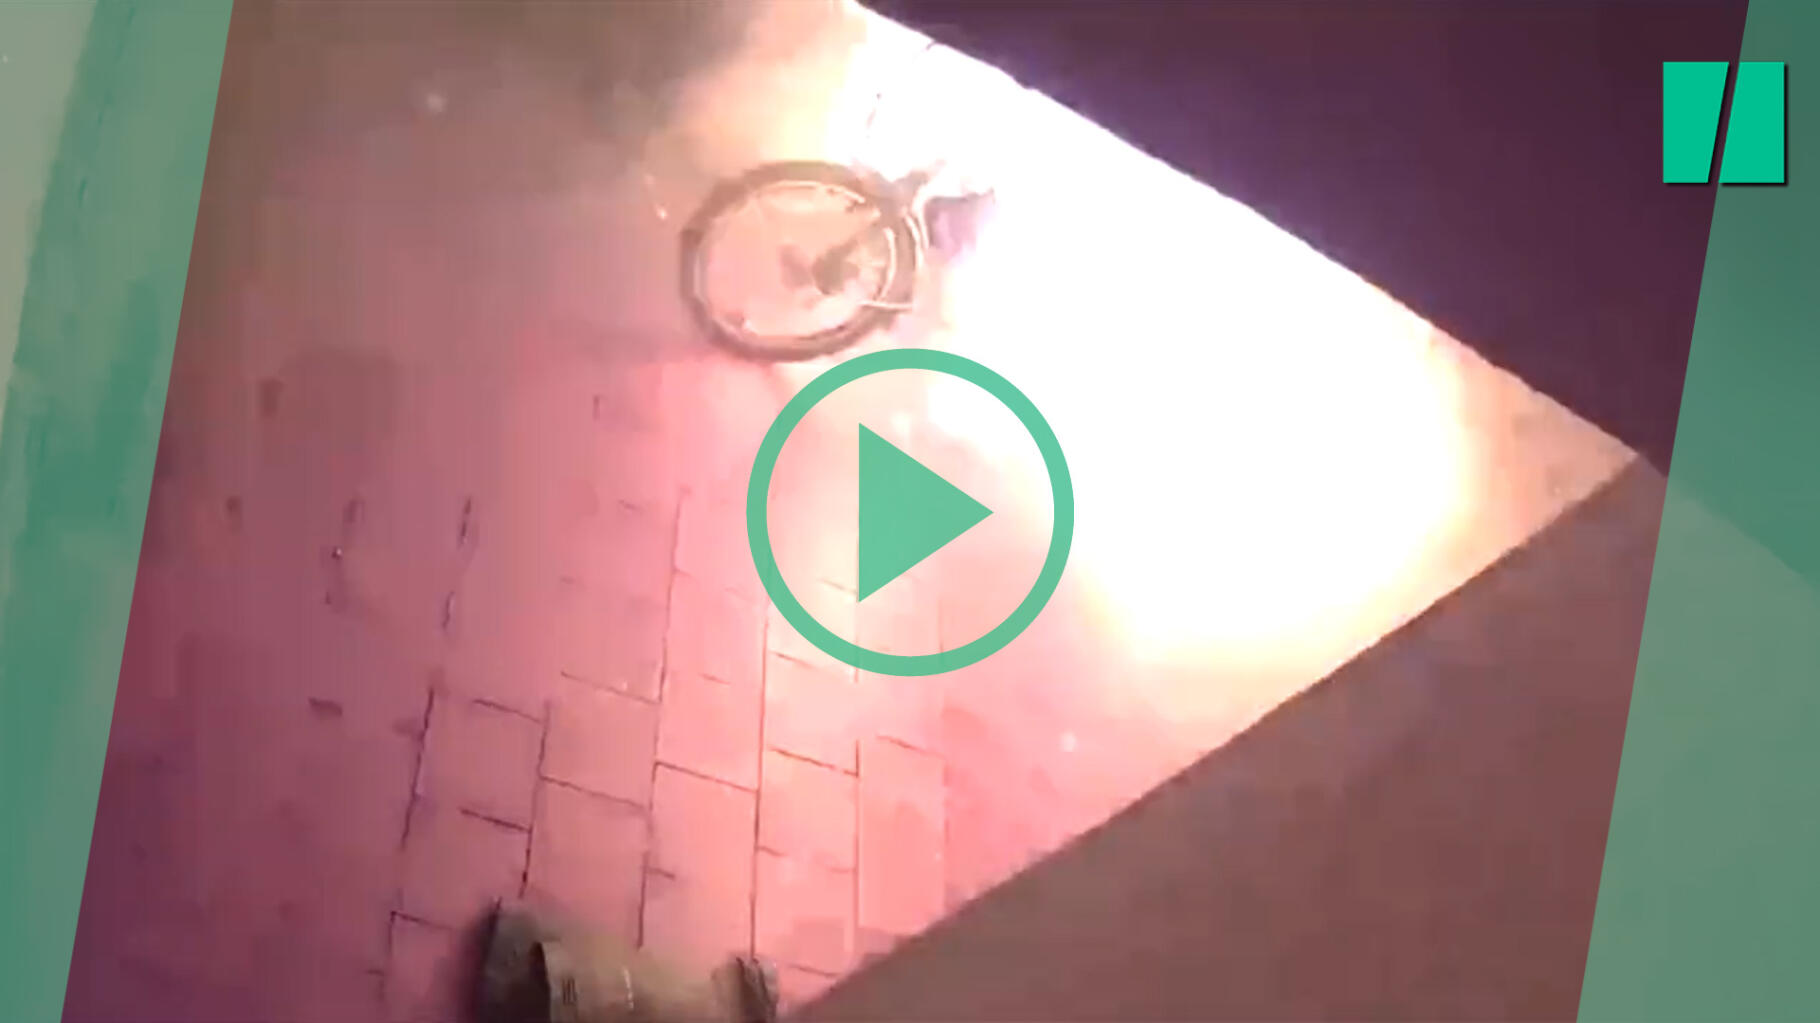 Avec ces vidéos, les pompiers de Londres alertent sur les explosions de batteries de vélos et trottinettes